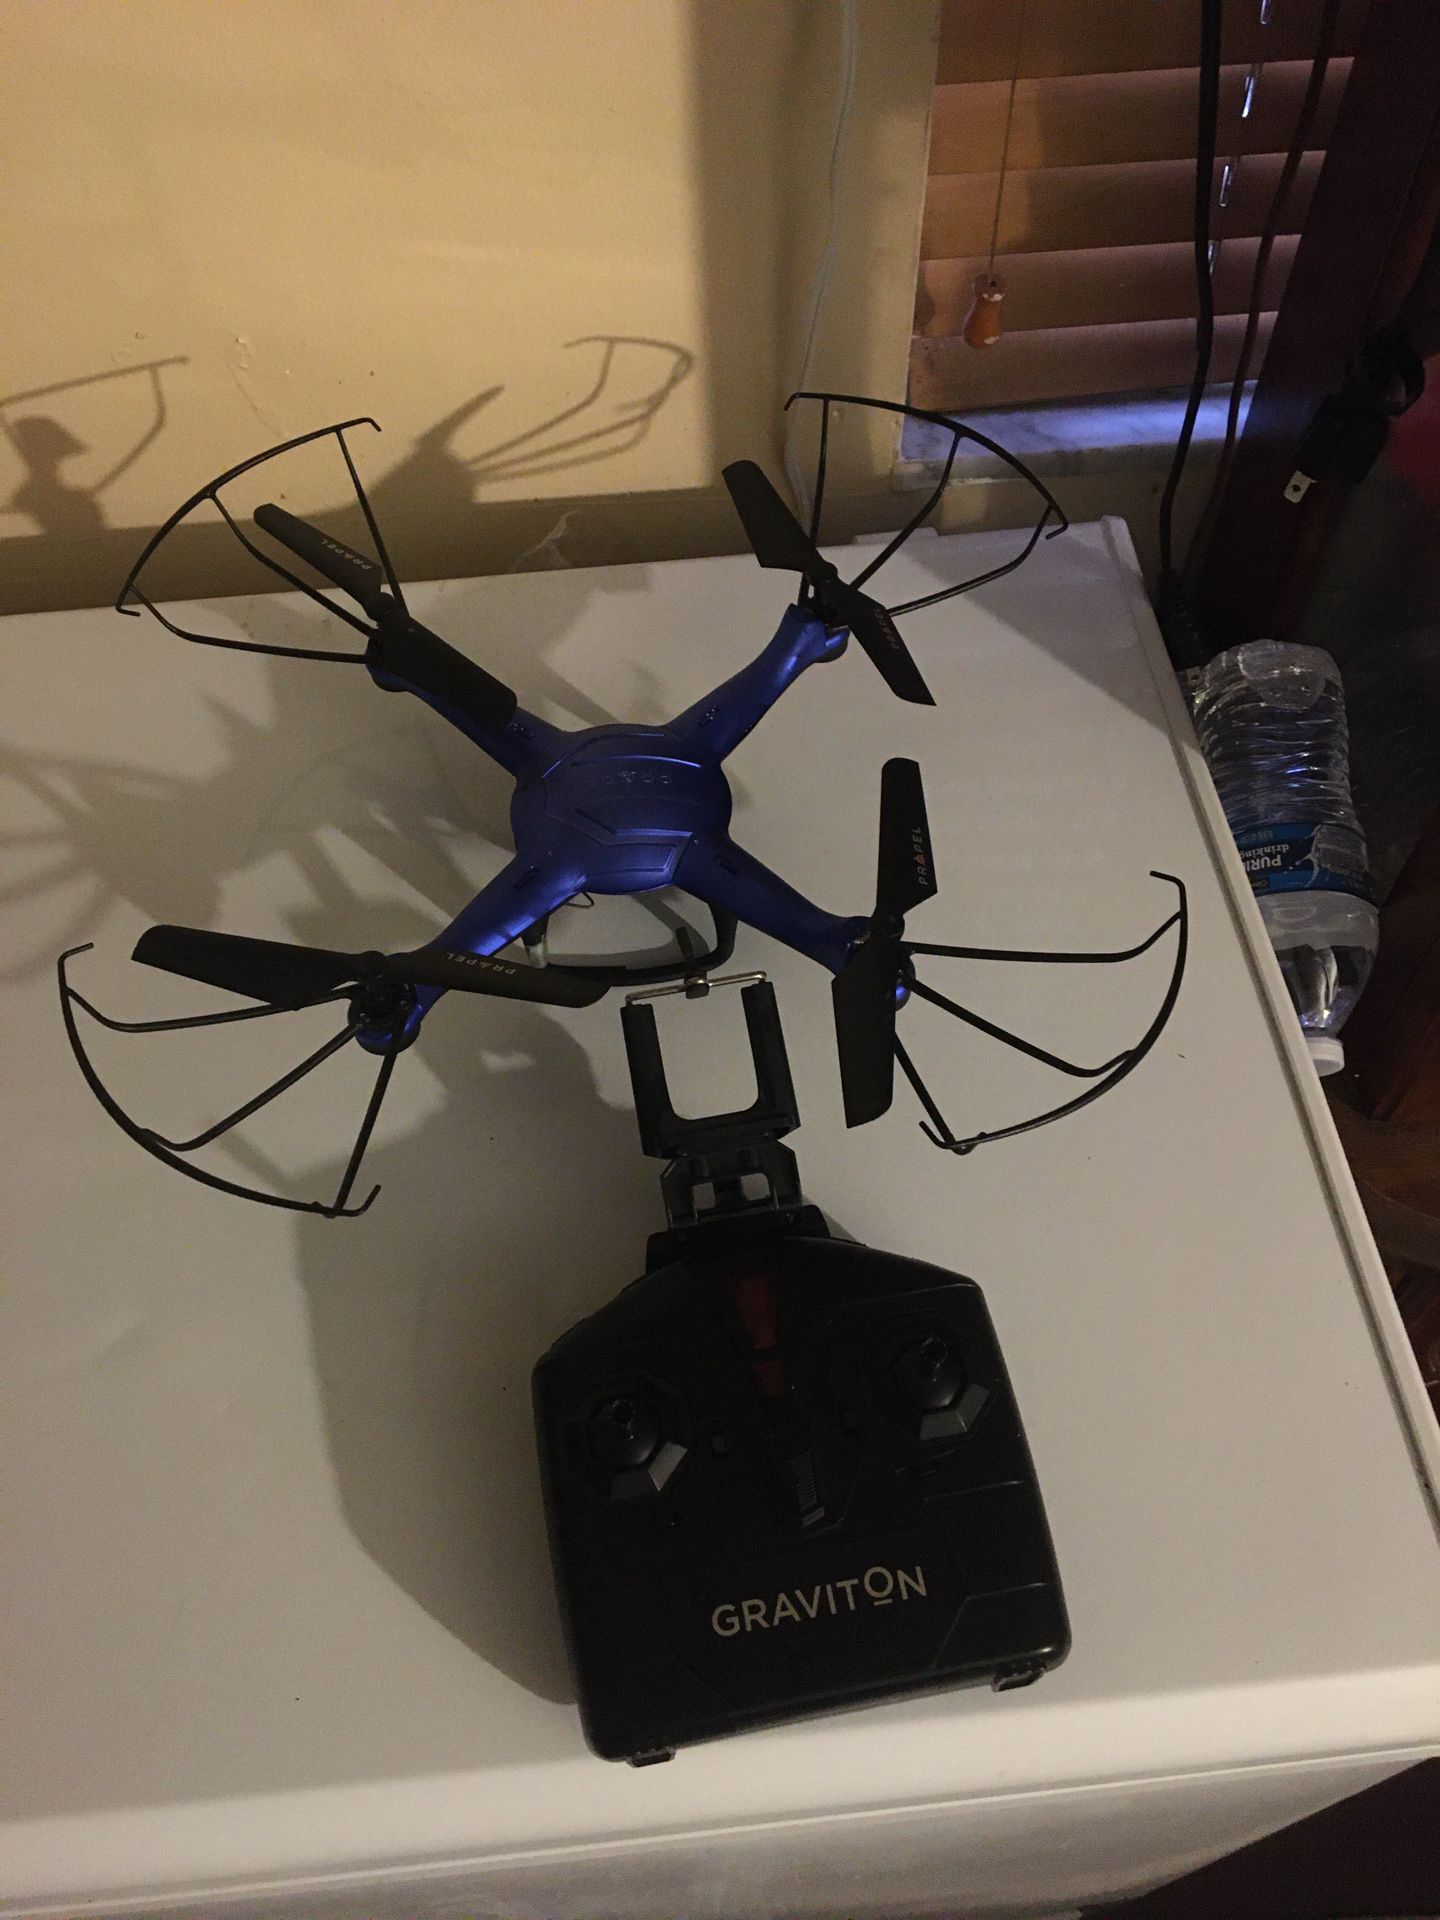 Propel drone